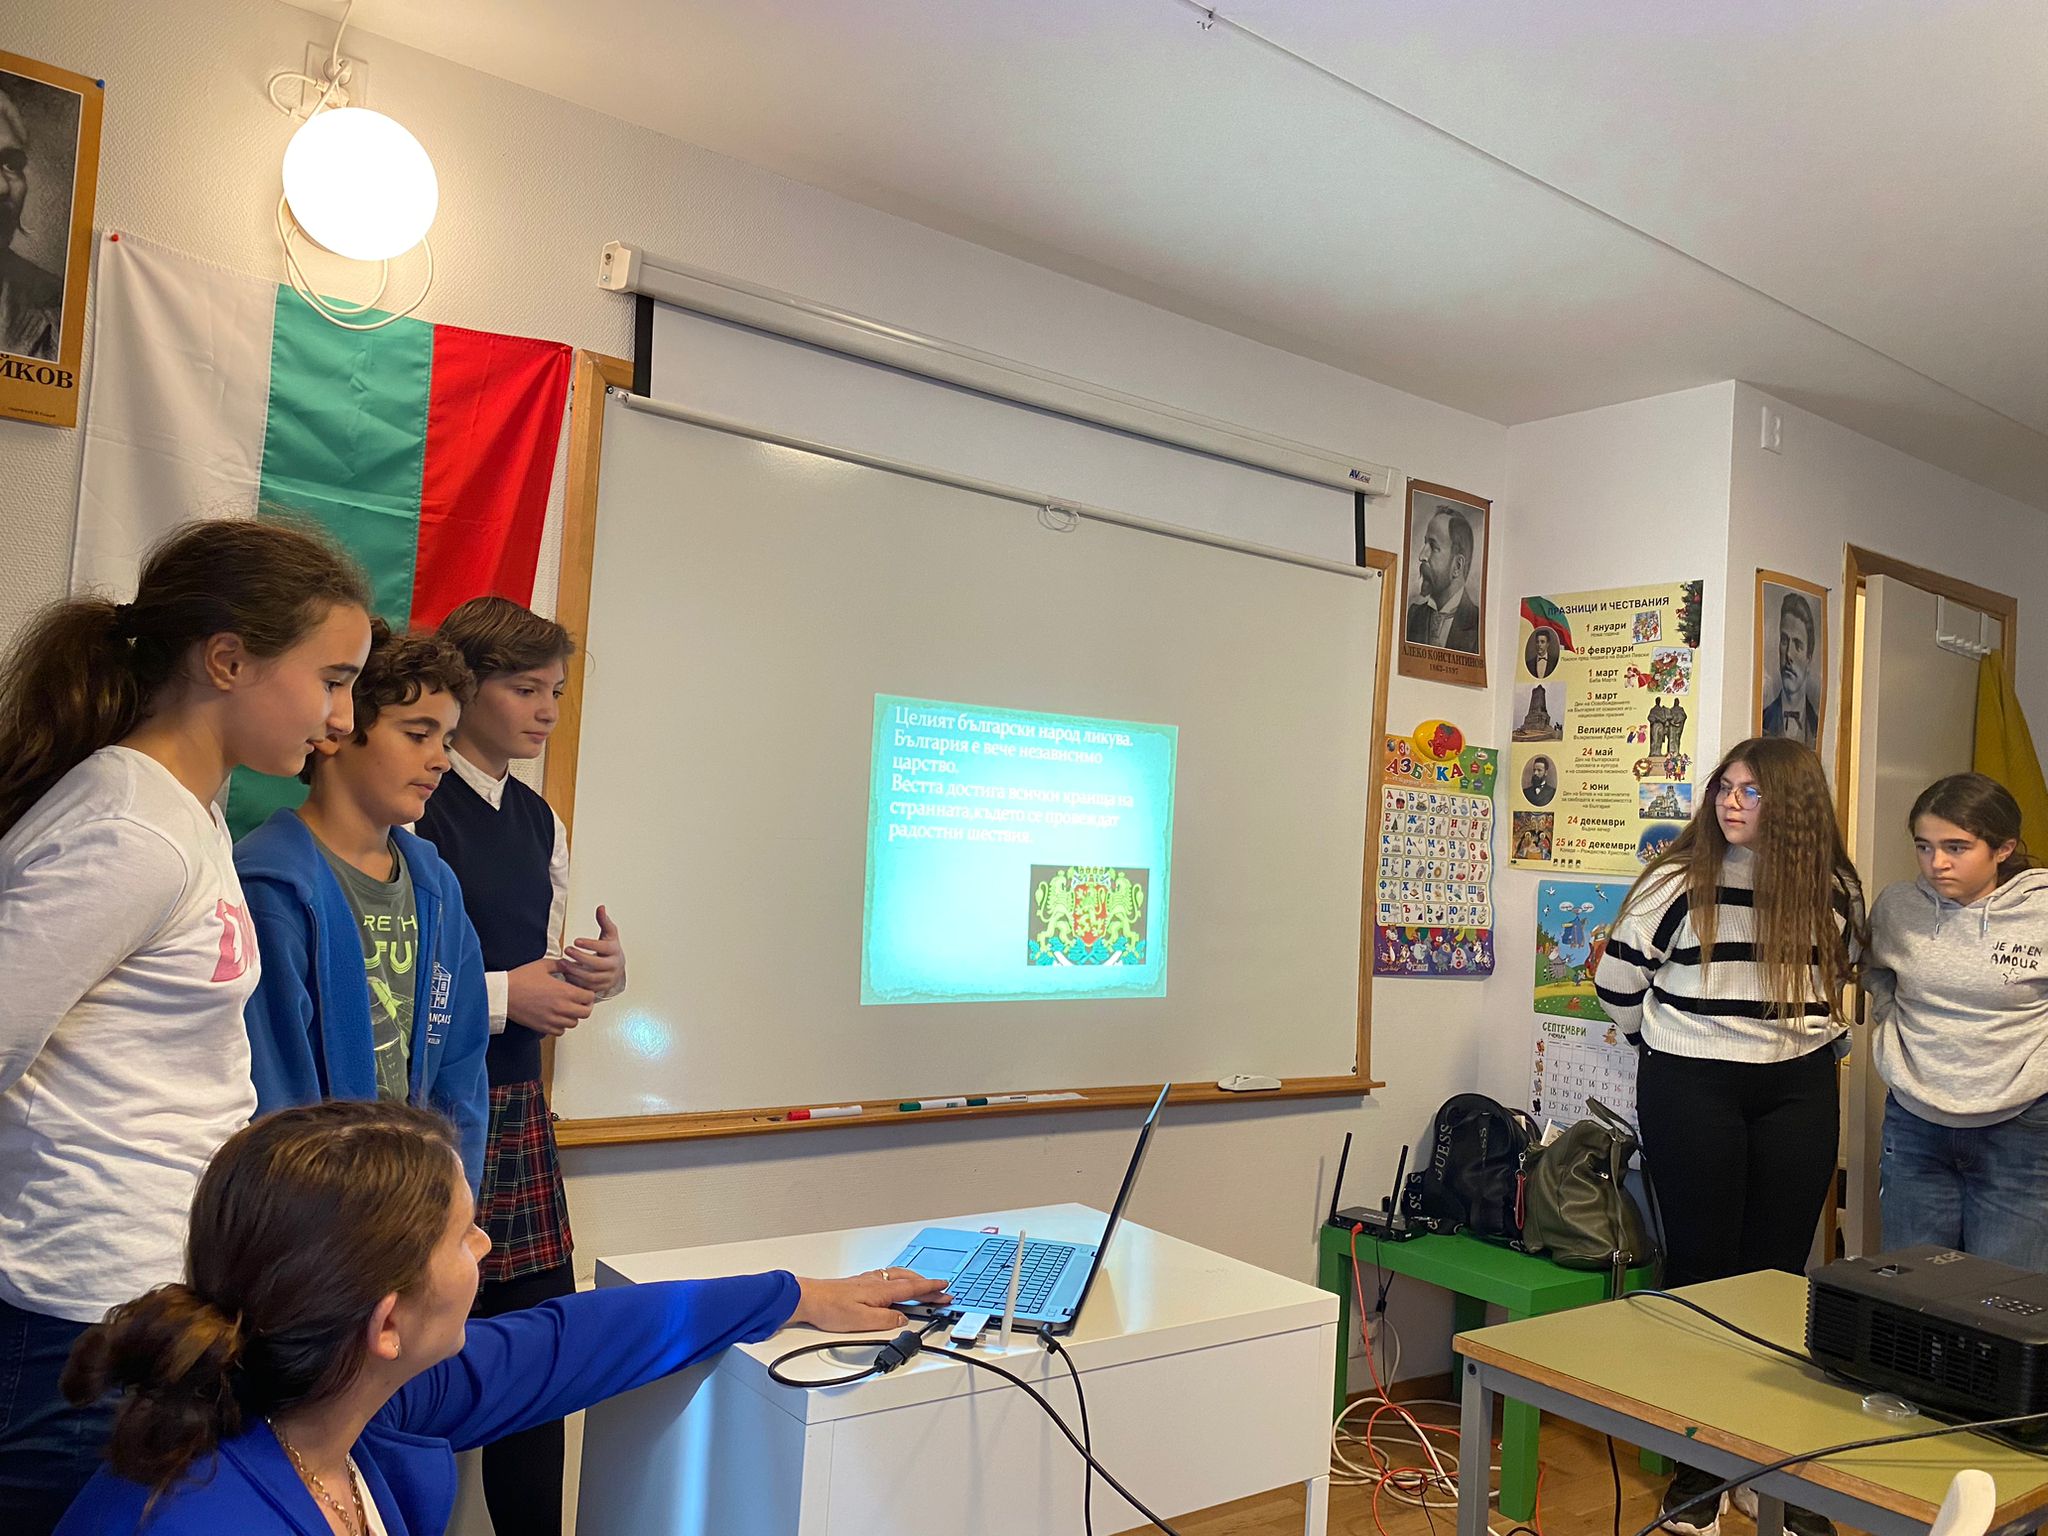  Децата от българското училище в Осло изнесоха открит урок за Деня на независимостта на България